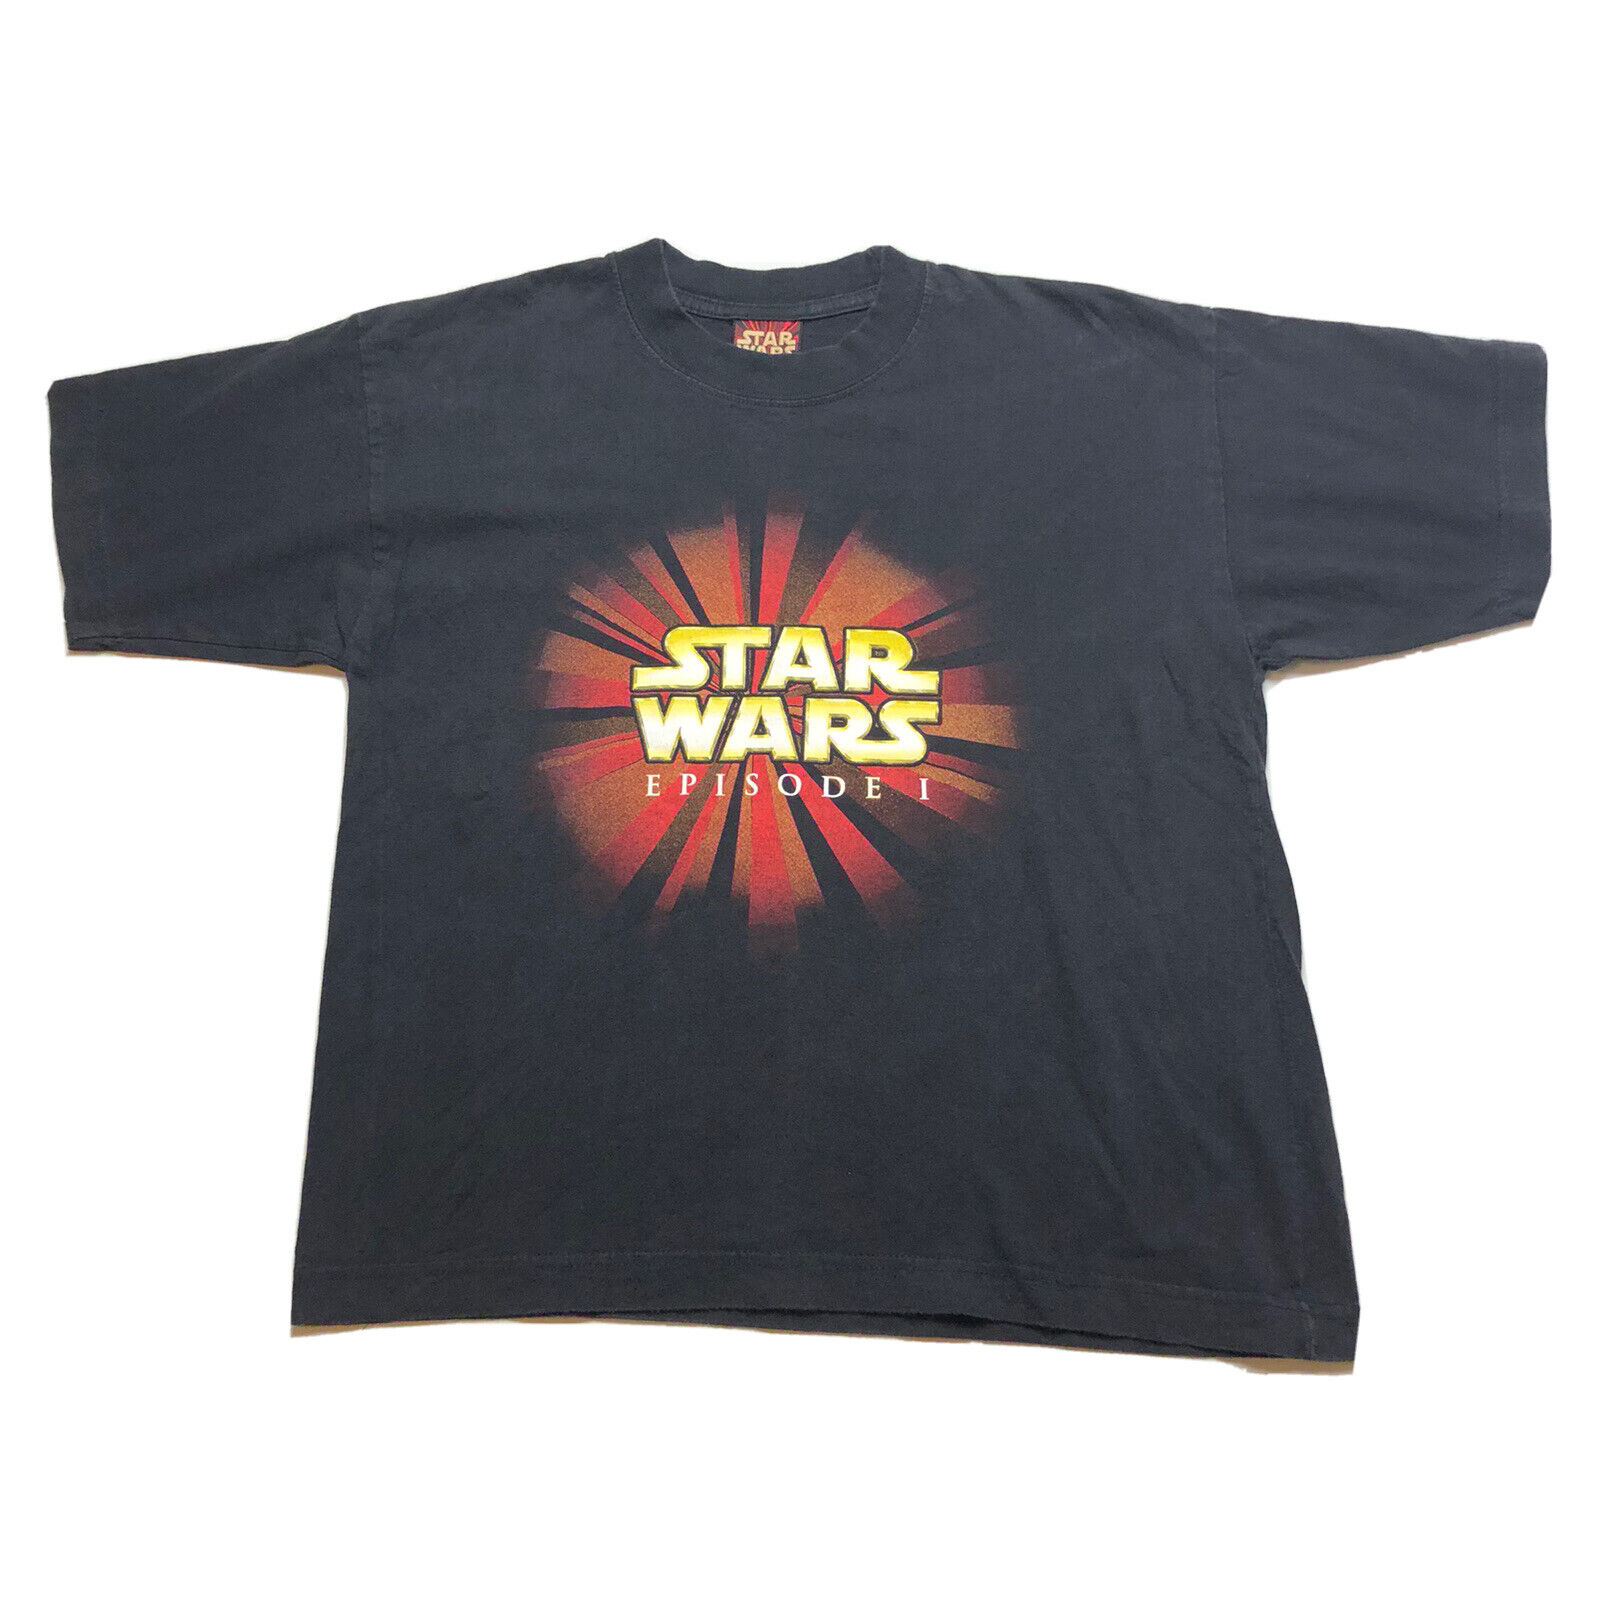 Vintage 1999 Star Wars Episode 1 T Shirt Black Youth S